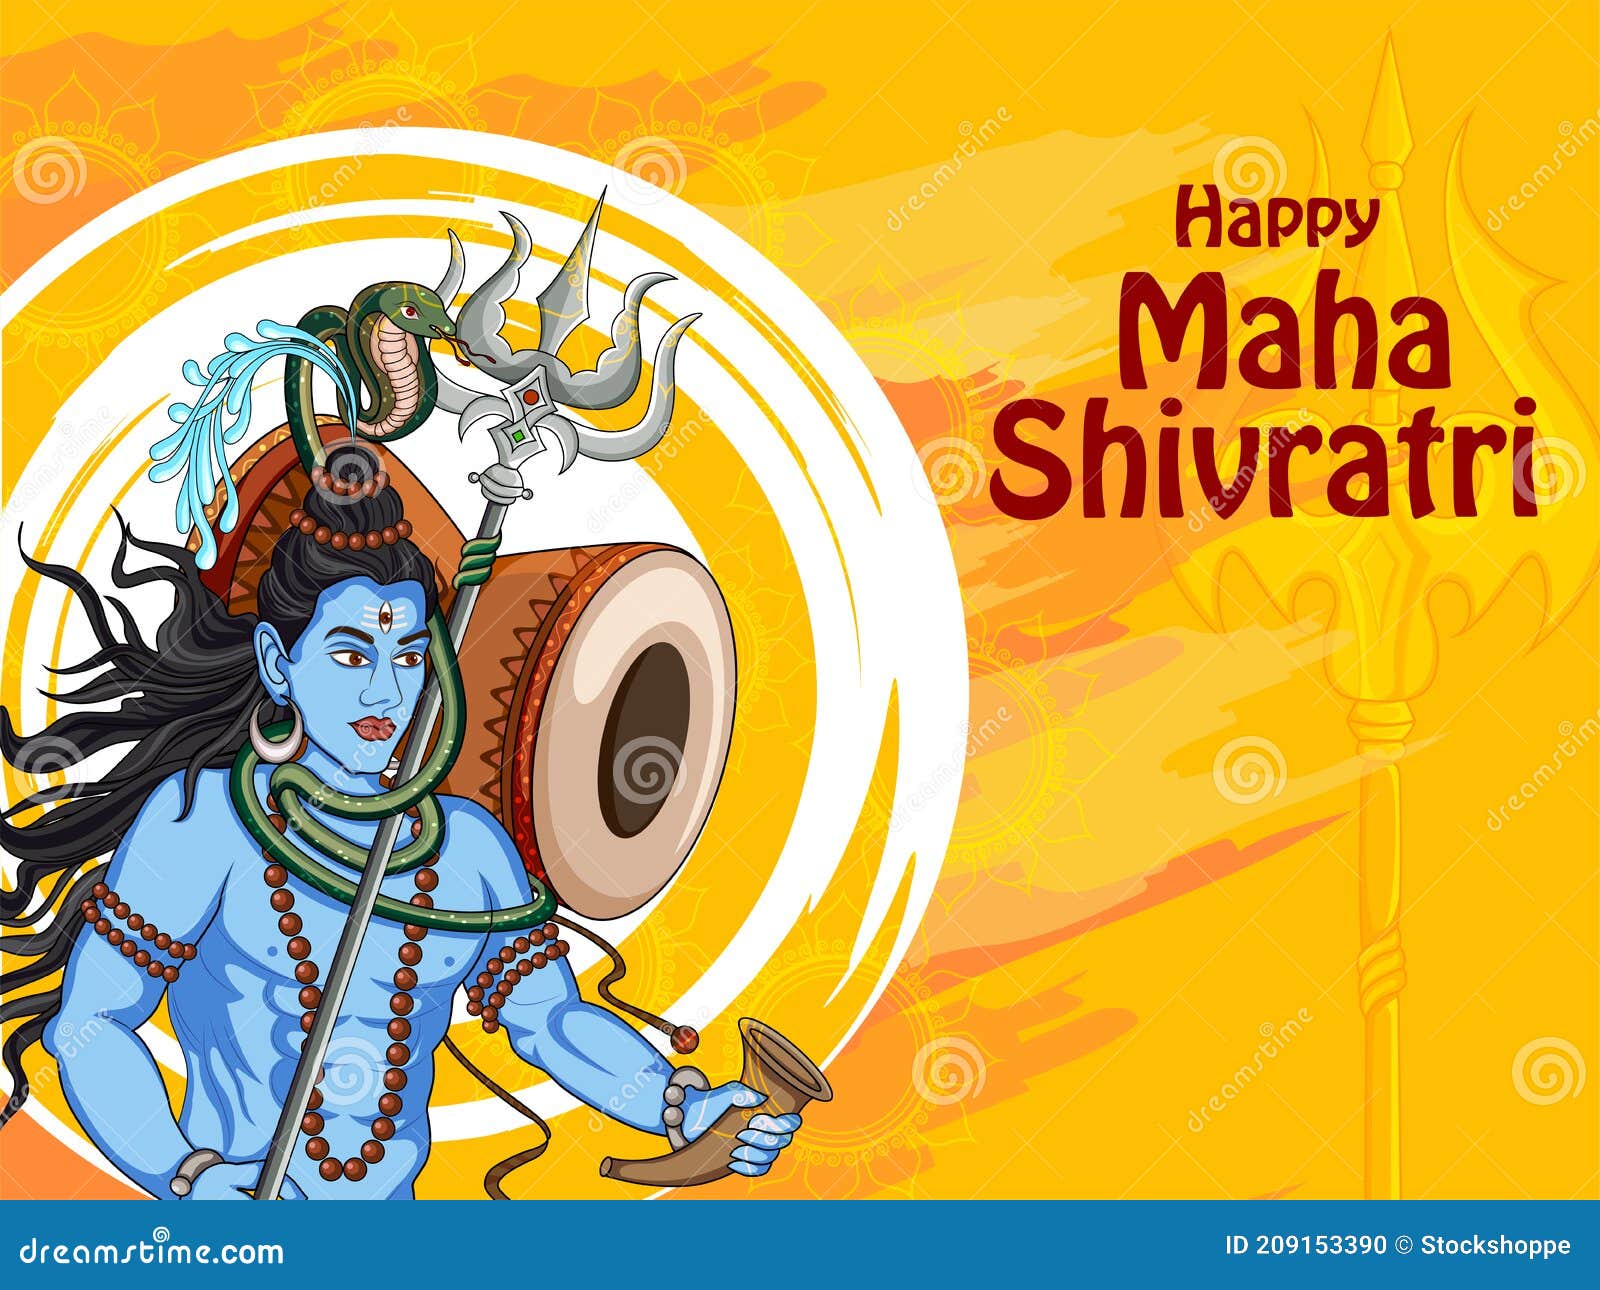 Lord Shiva on Holy Ocassion of Maha Shivratri, Hindu Festival of India ...